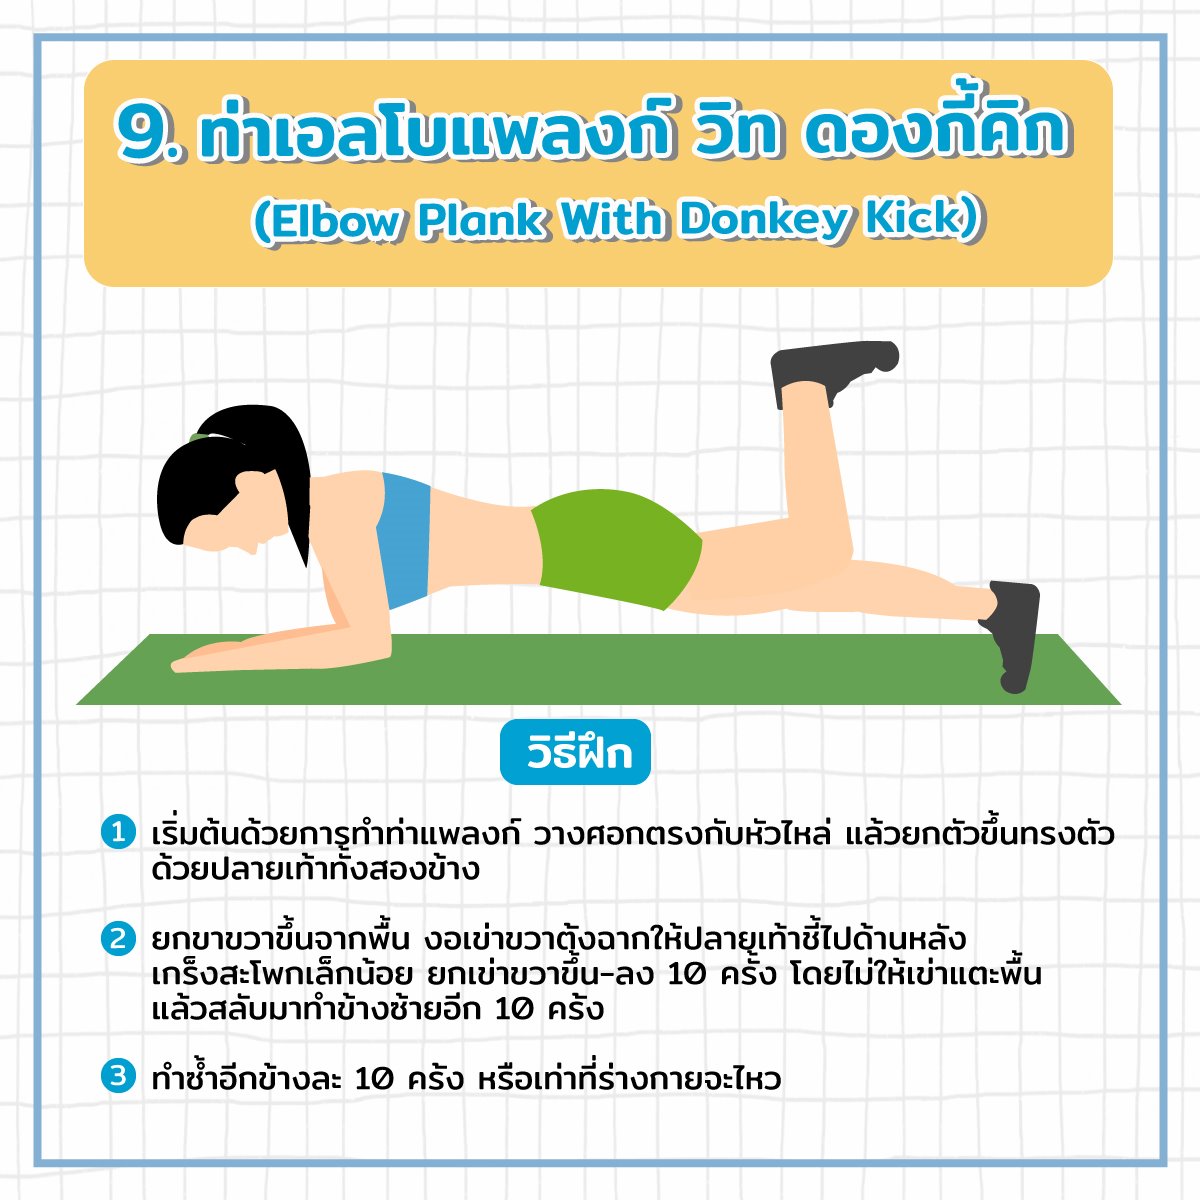 ท่าเอลโบแพลงก์ วิท ดองกี้คิก (Elbow Plank With Donkey Kick)